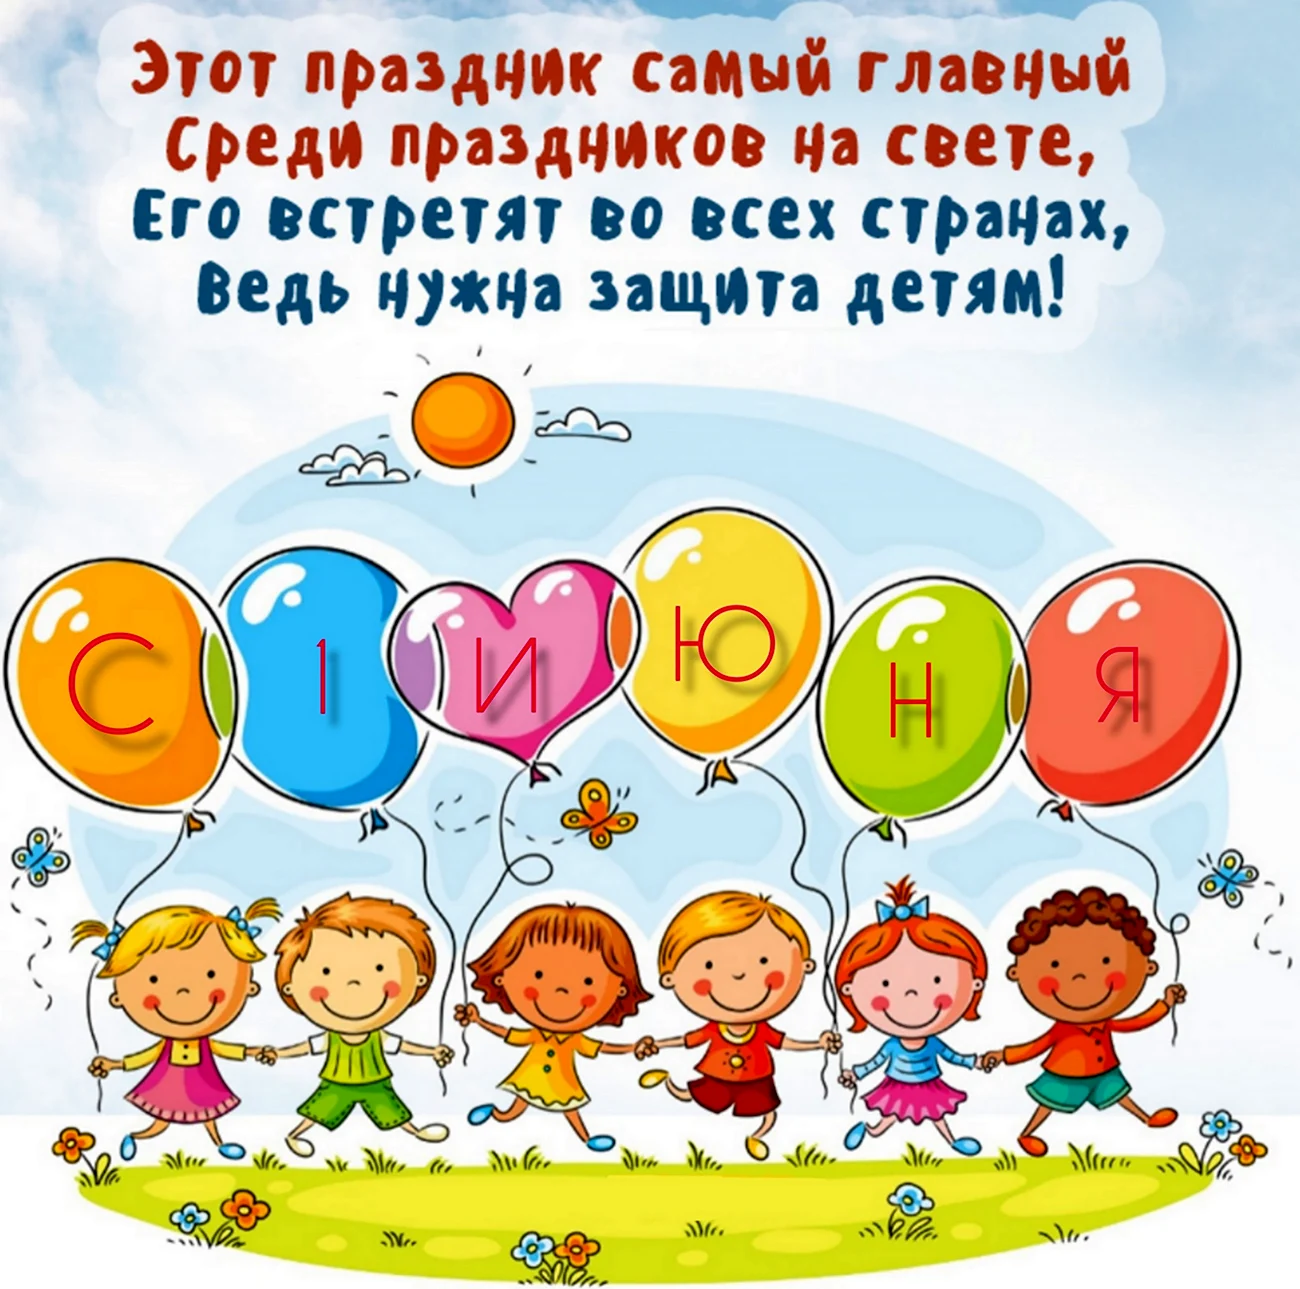 Международный день защиты детей. Поздравление